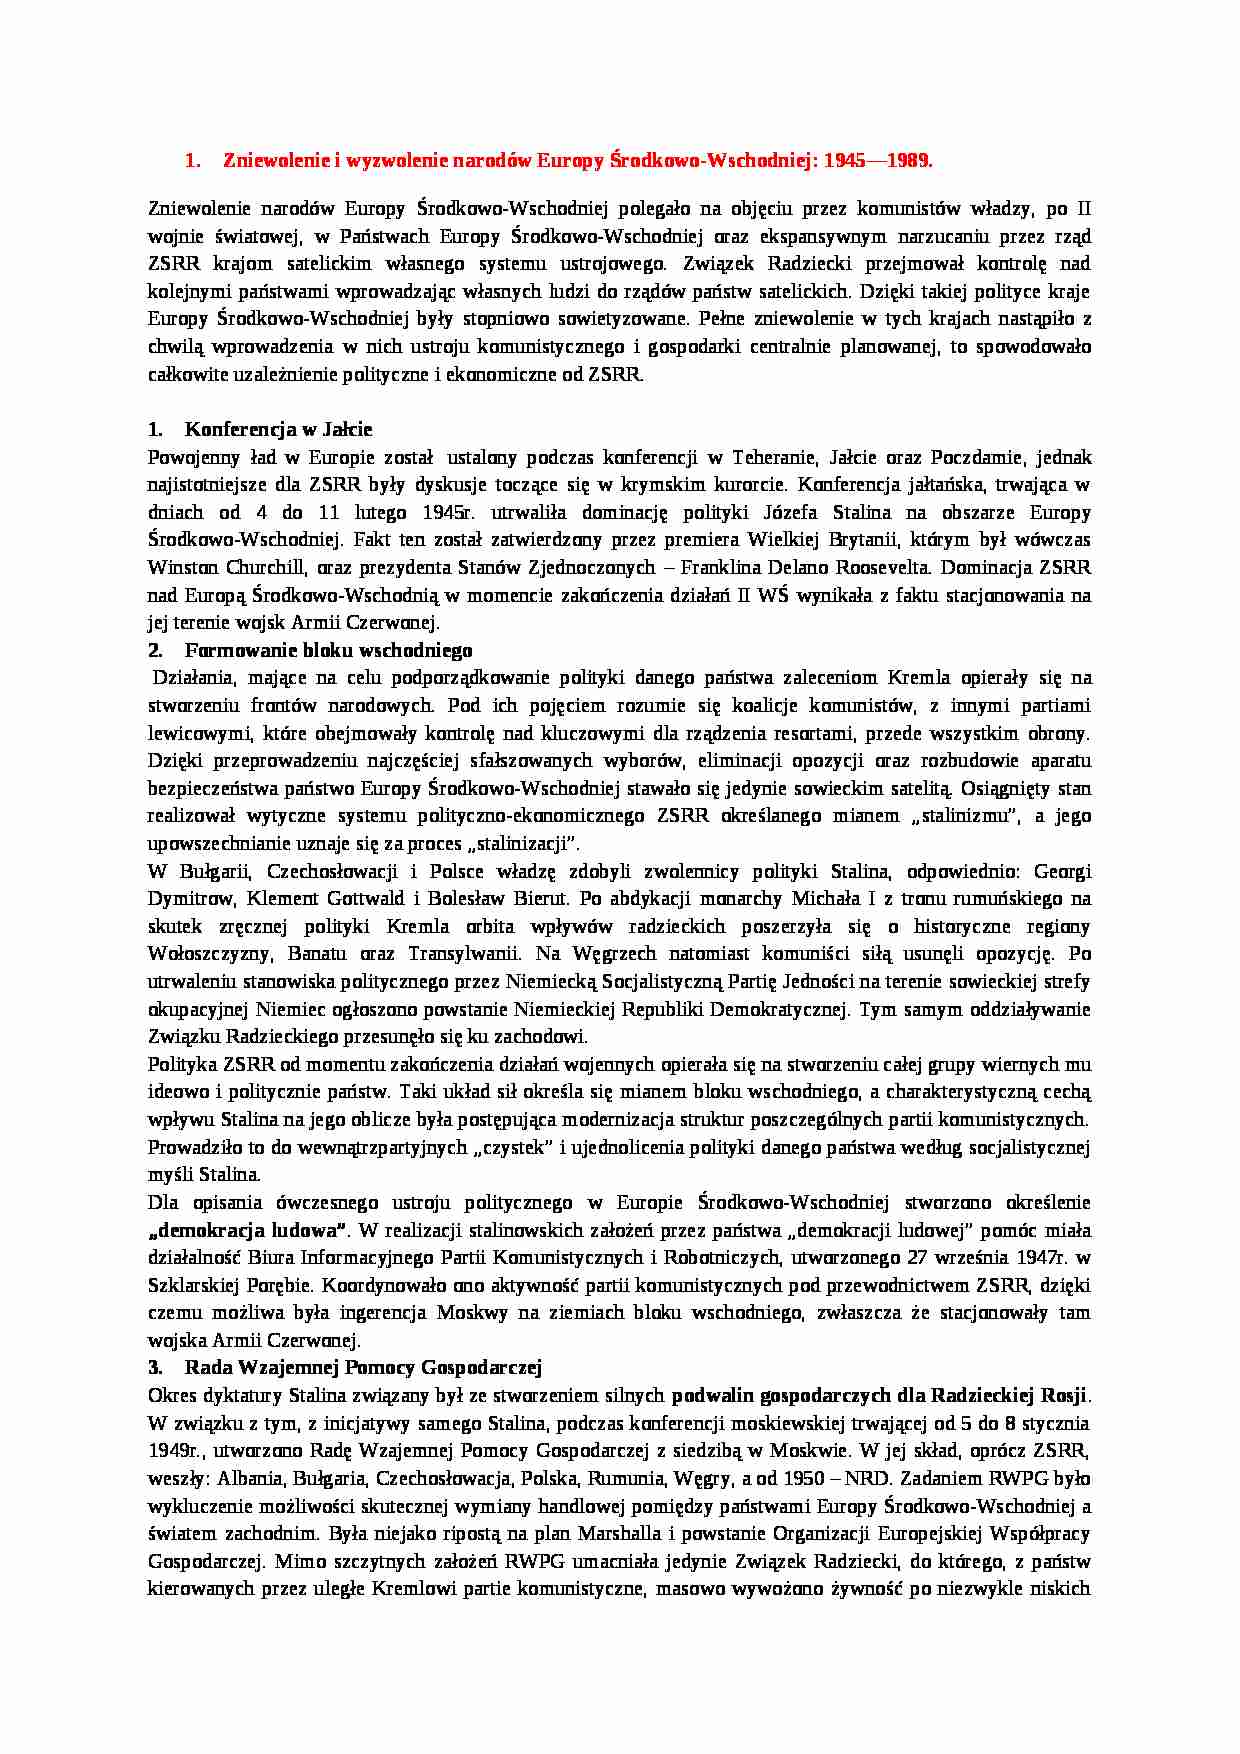 Zniewolenie i wyzwolenie narodów Europy Środkowo-Wschodniej 1945-1989  - strona 1